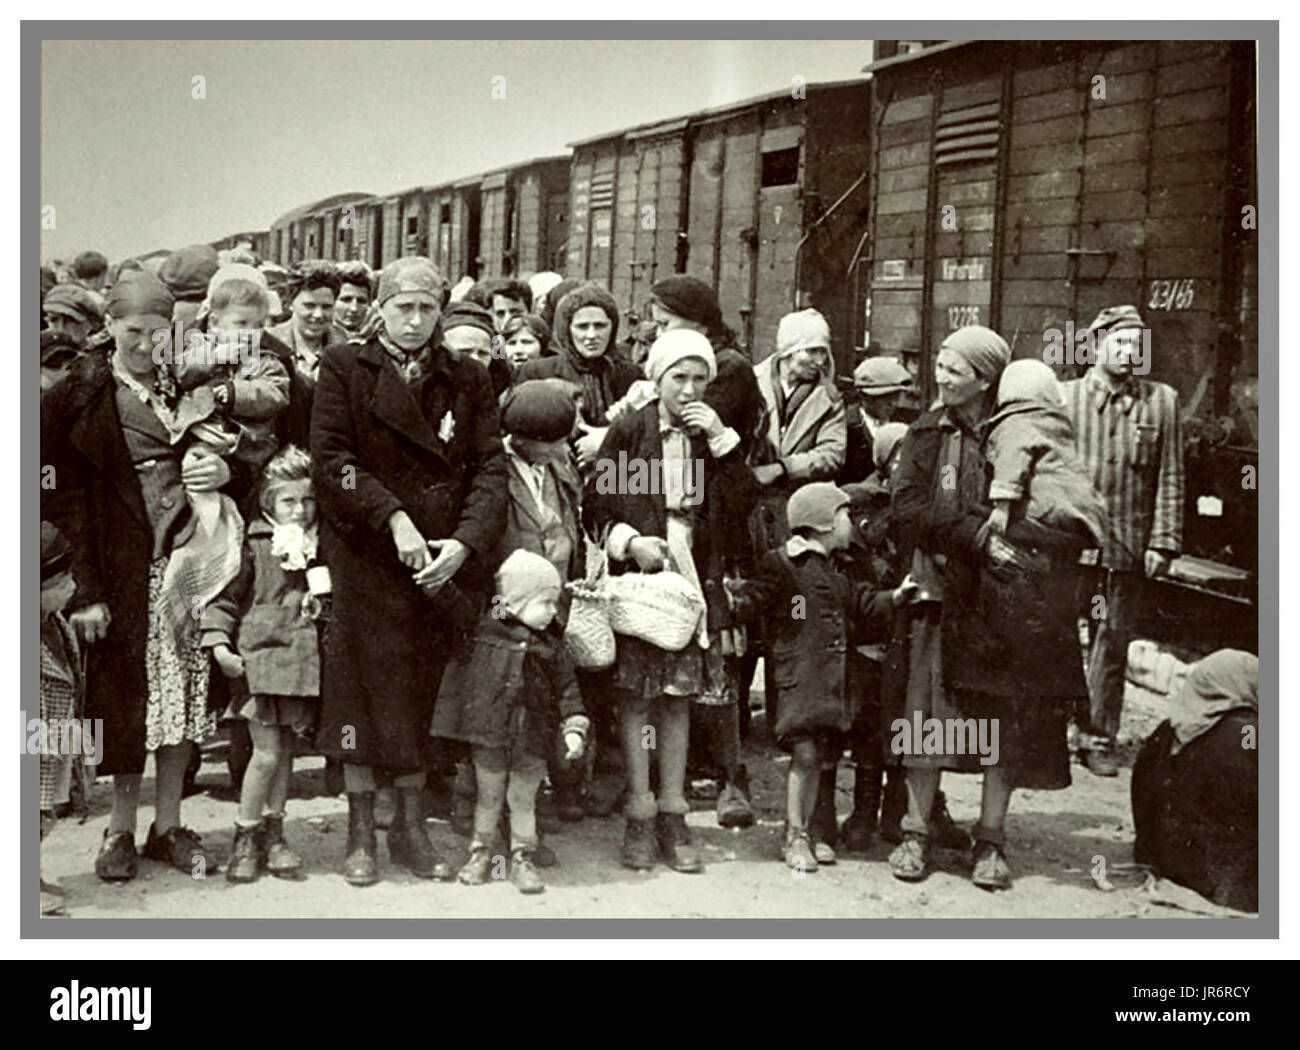 Mujeres y niños judíos de Auschwitz-Birkenau algunos llevaban designado  Nazi estrellas amarillas llegan en camiones de raíl básico a  Auschwitz-Birkenau, WW2 un campo de concentración nazi alemán. Los niños  judíos eran el